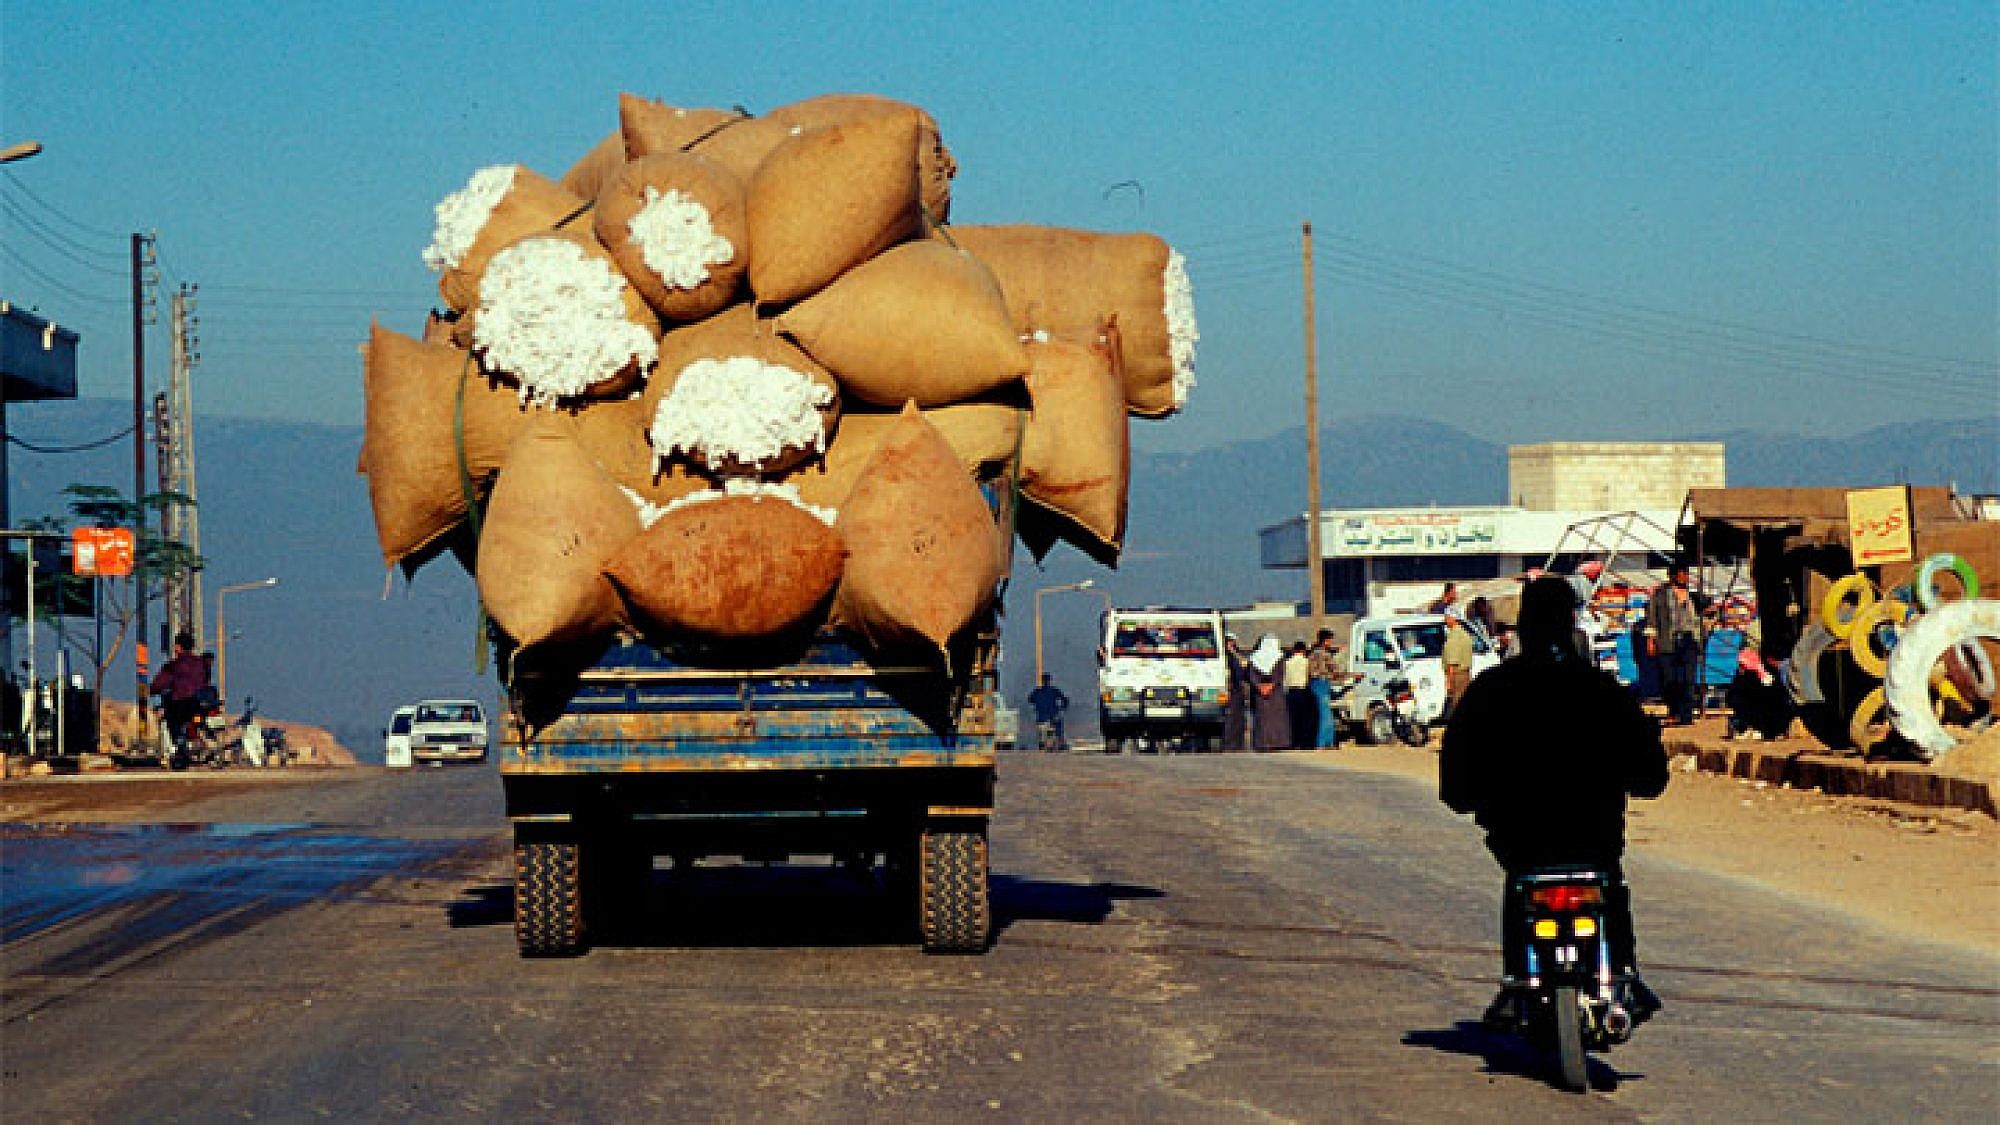 בדרך לחאלב, סוריה. צילום: נפתלי הילגר